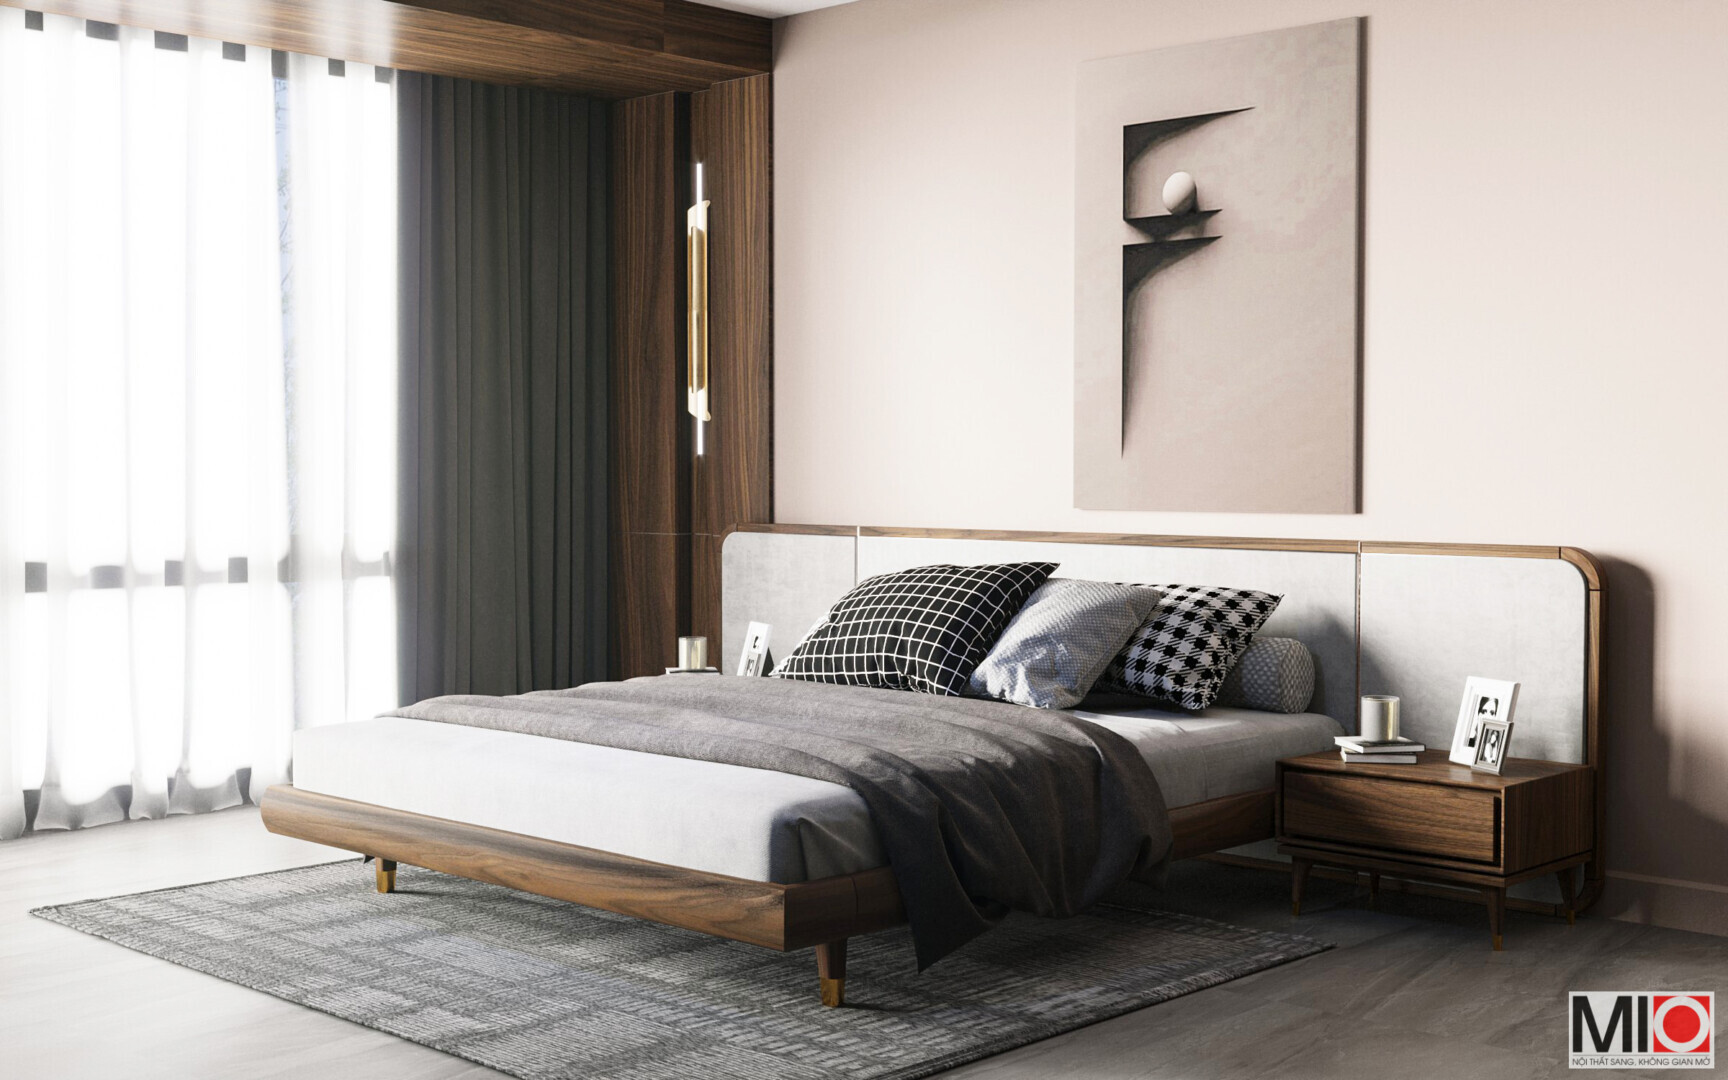 Cách thiết kế, lựa chọn nội thất cho phòng ngủ lãng mạn